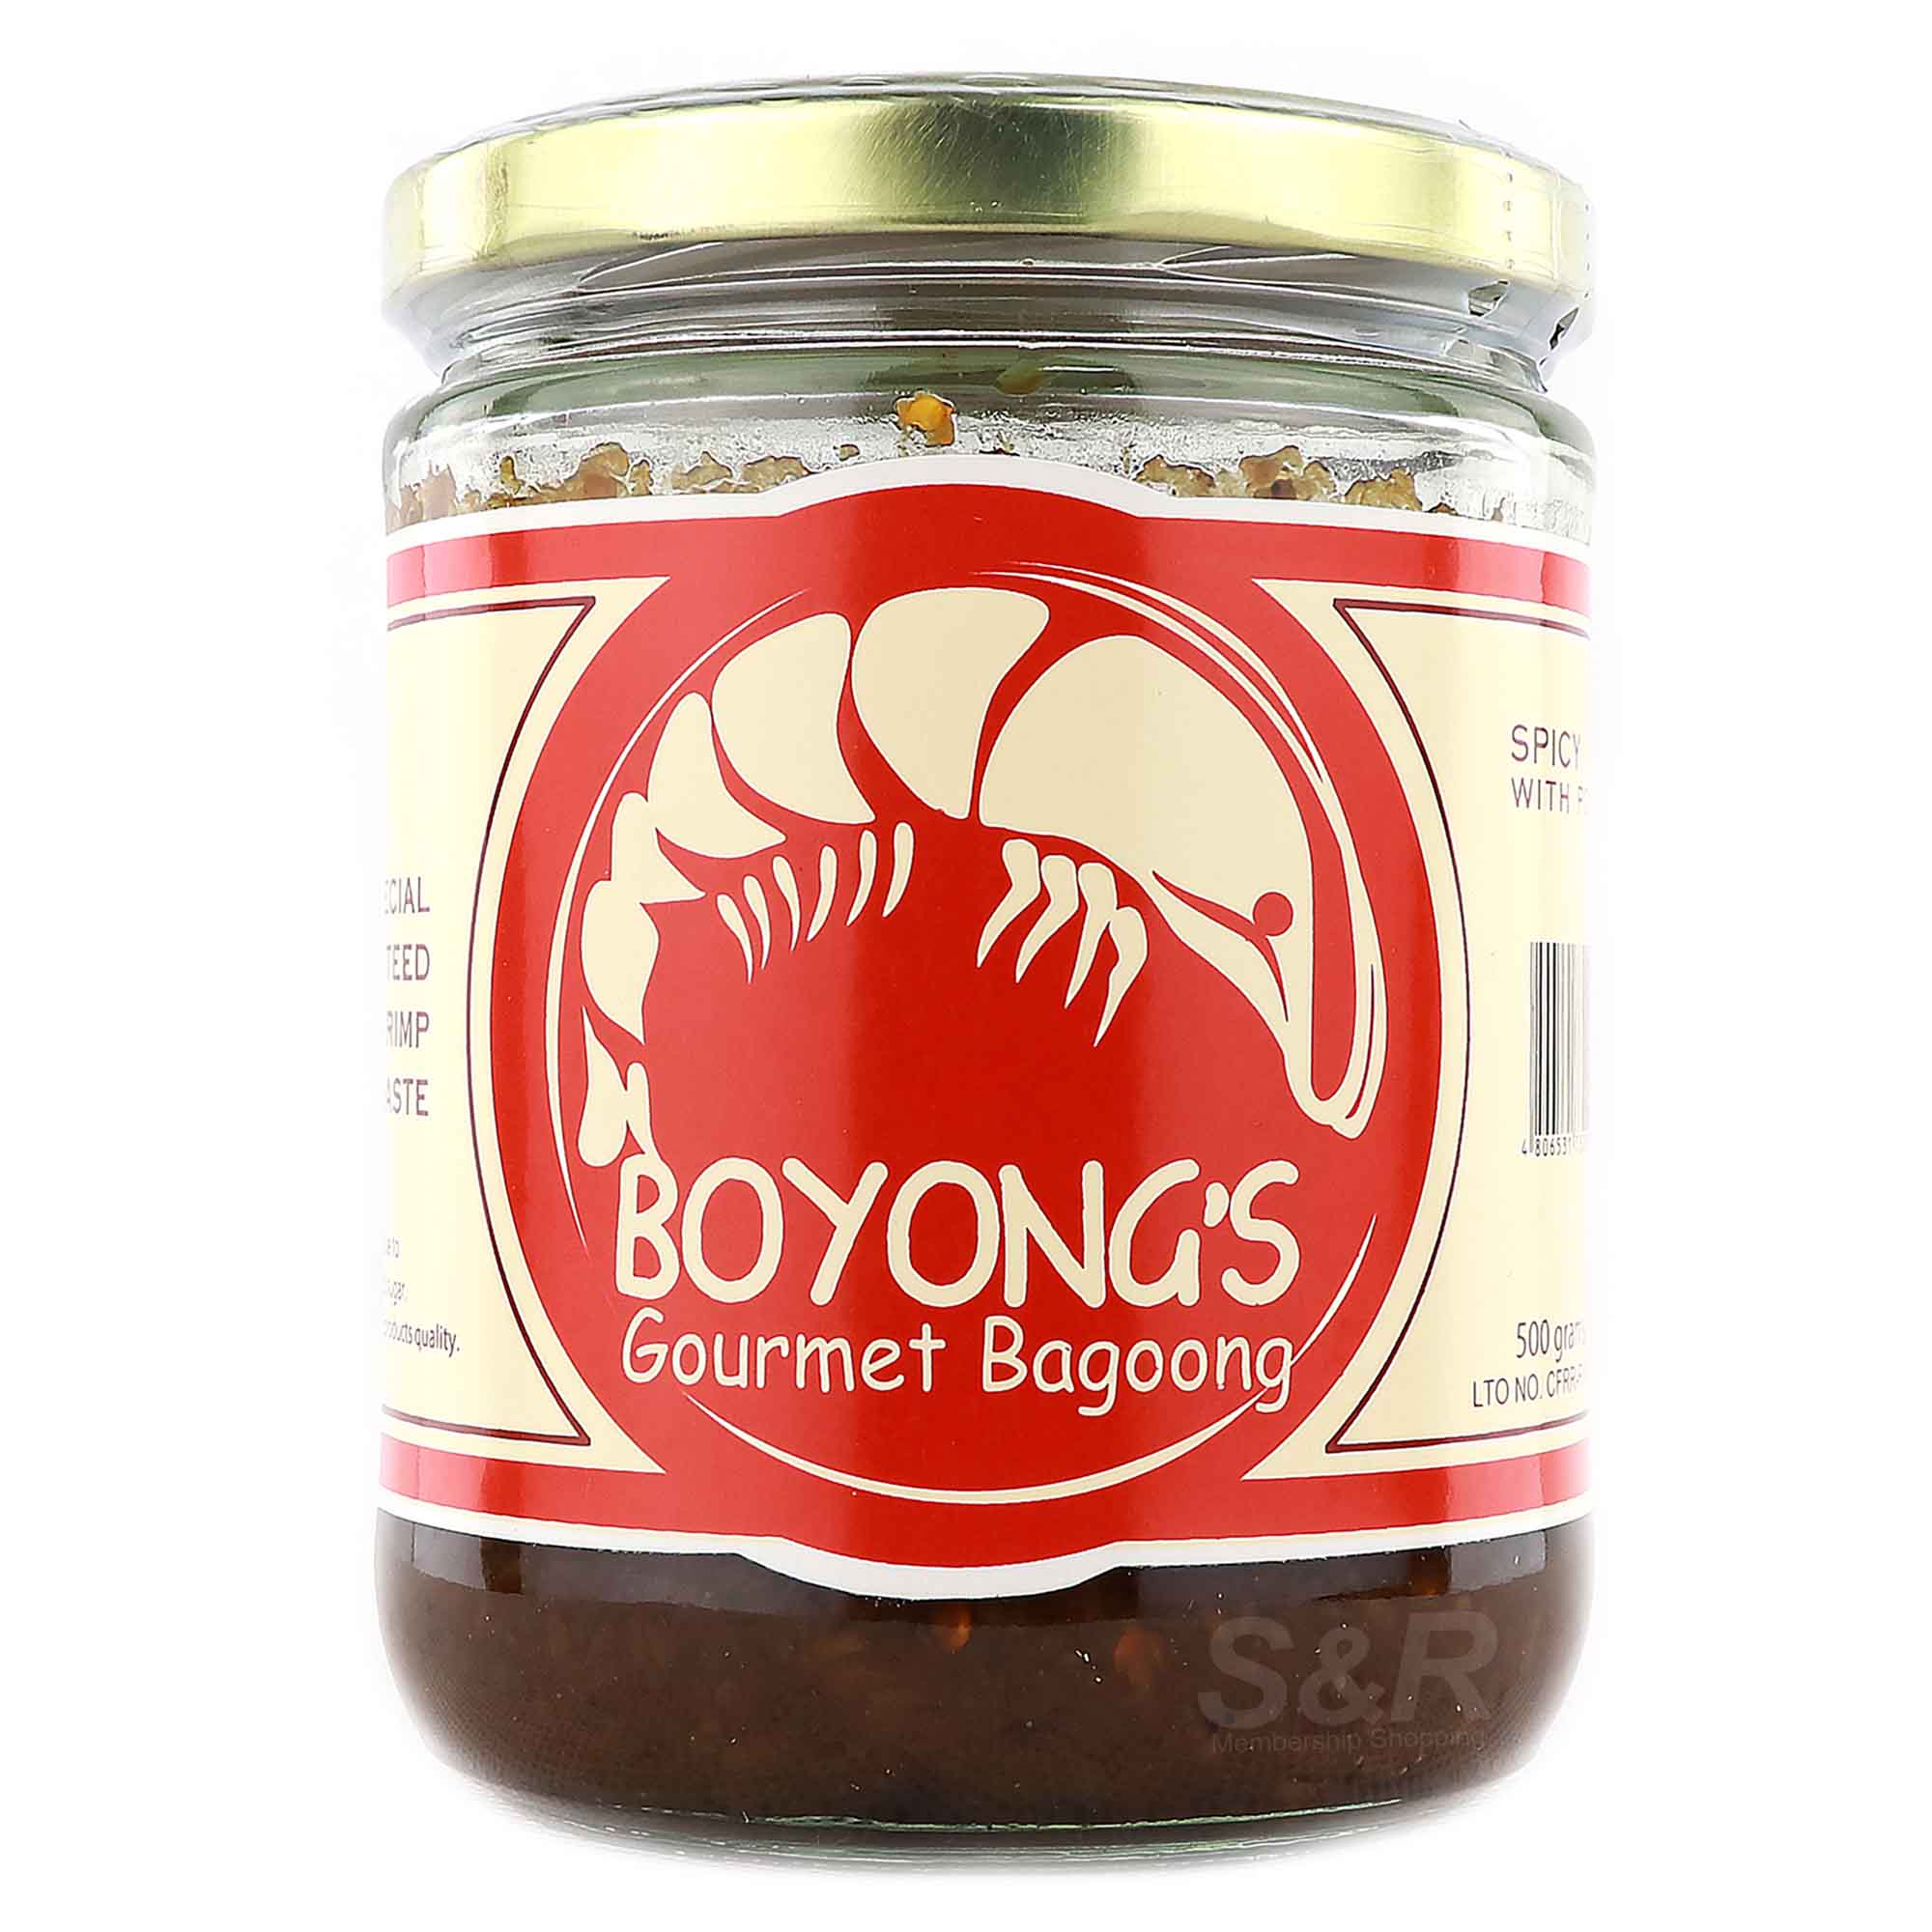 Boyong's Gourmet Bagoong Spicy Flavor 500g